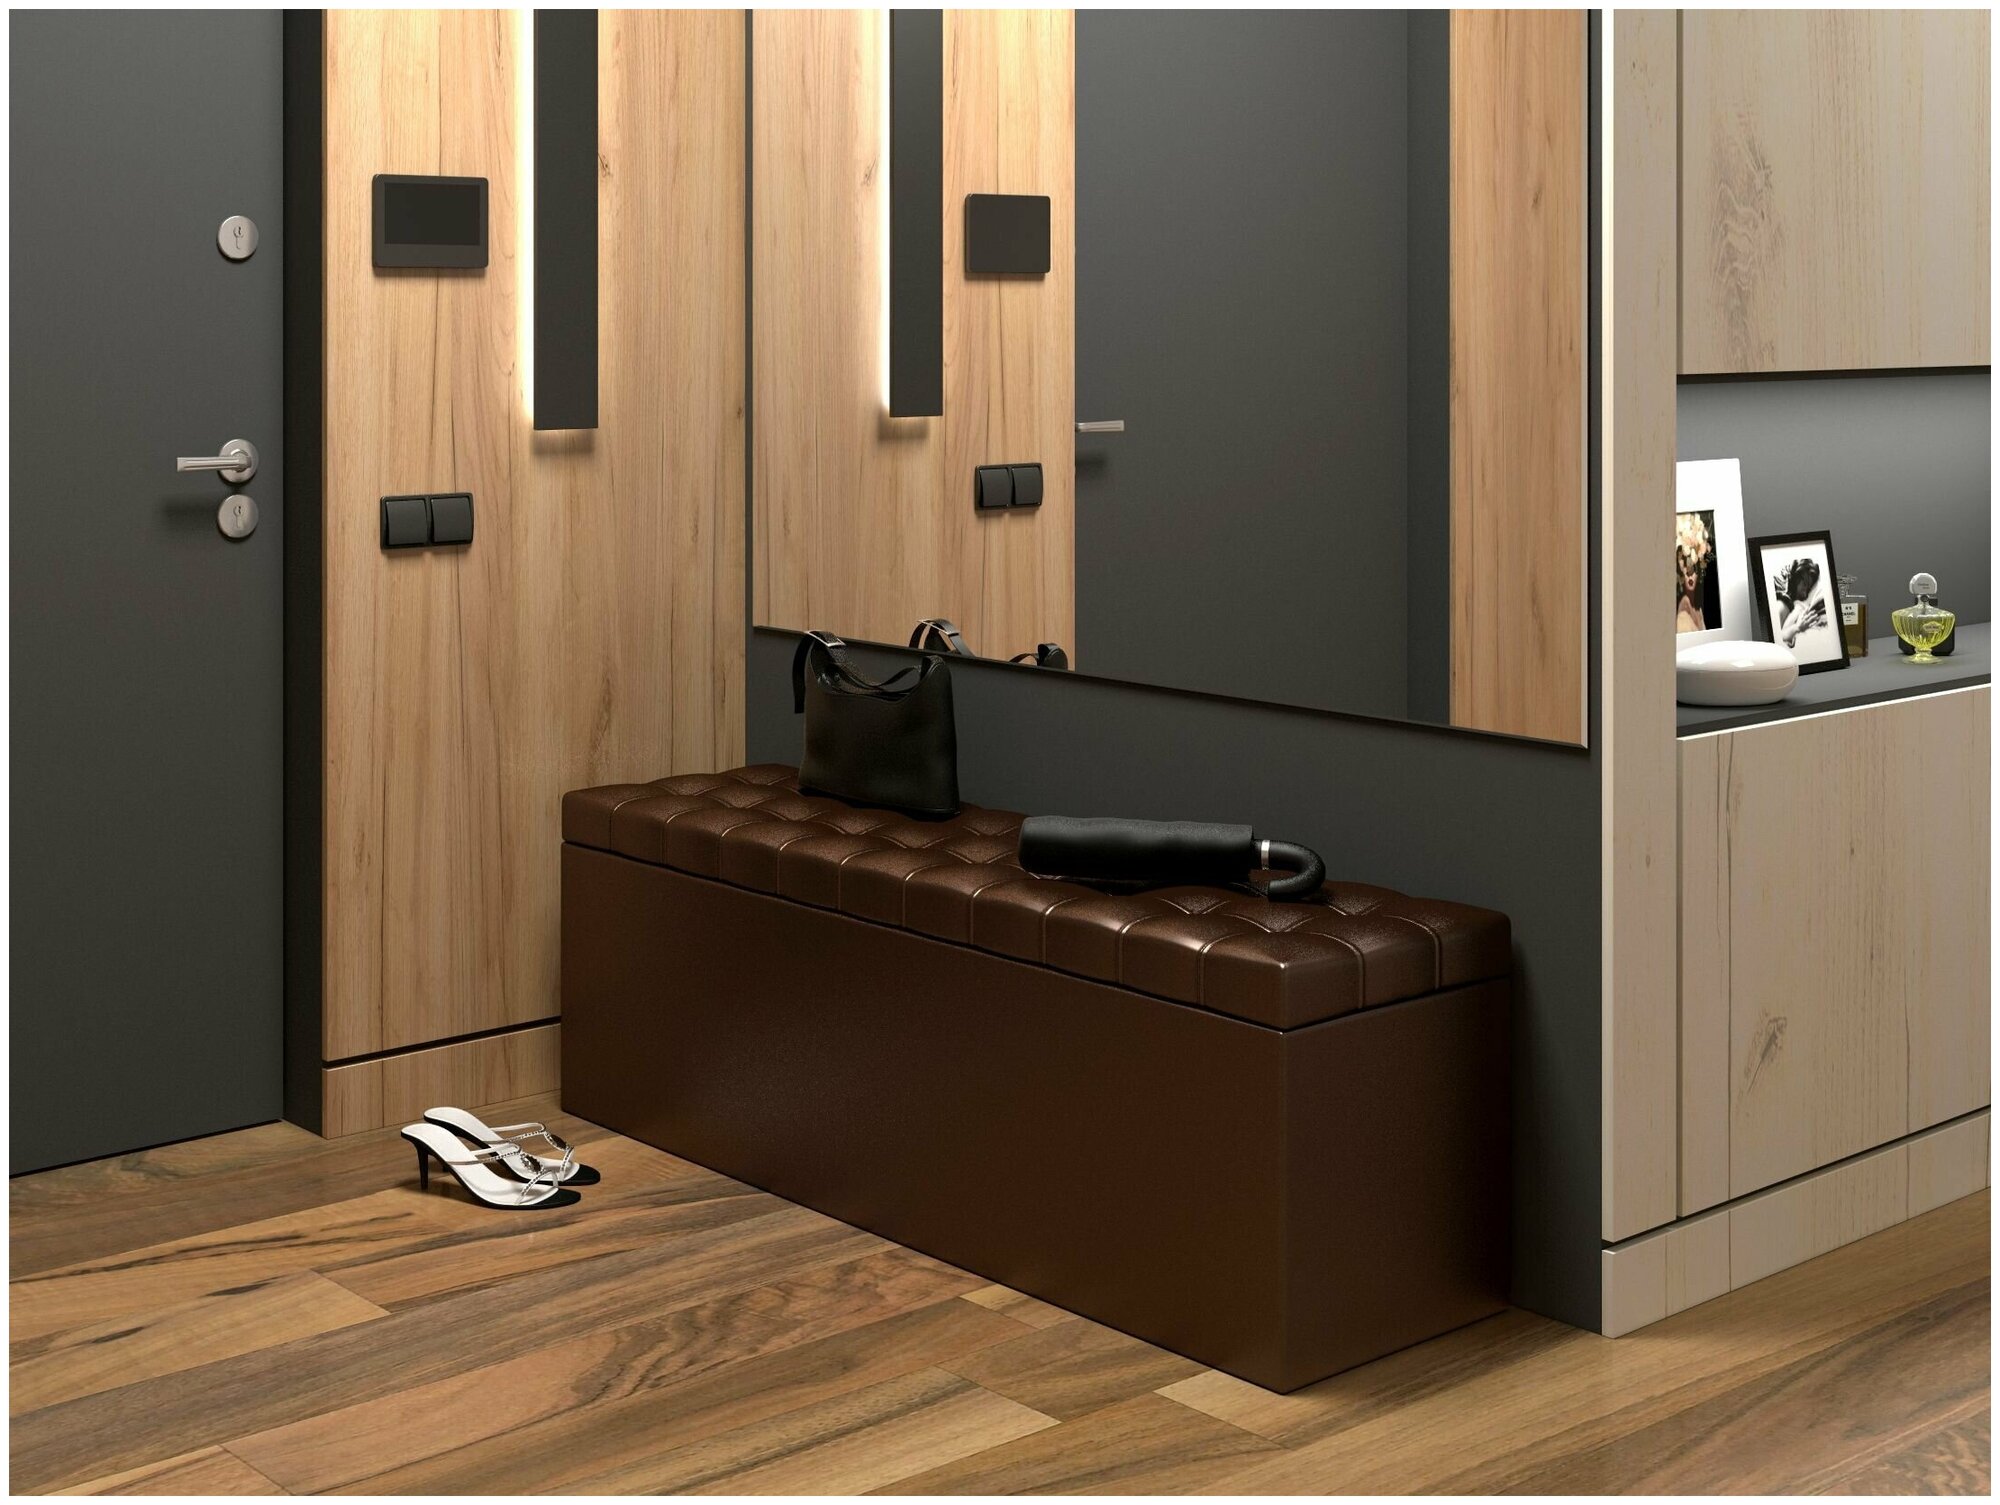 Пуфик БонМебель Квадро 4, коричневый, 125х36х44, пуф с ящиком для хранения, экокожа, пуфик в прихожую, мебель